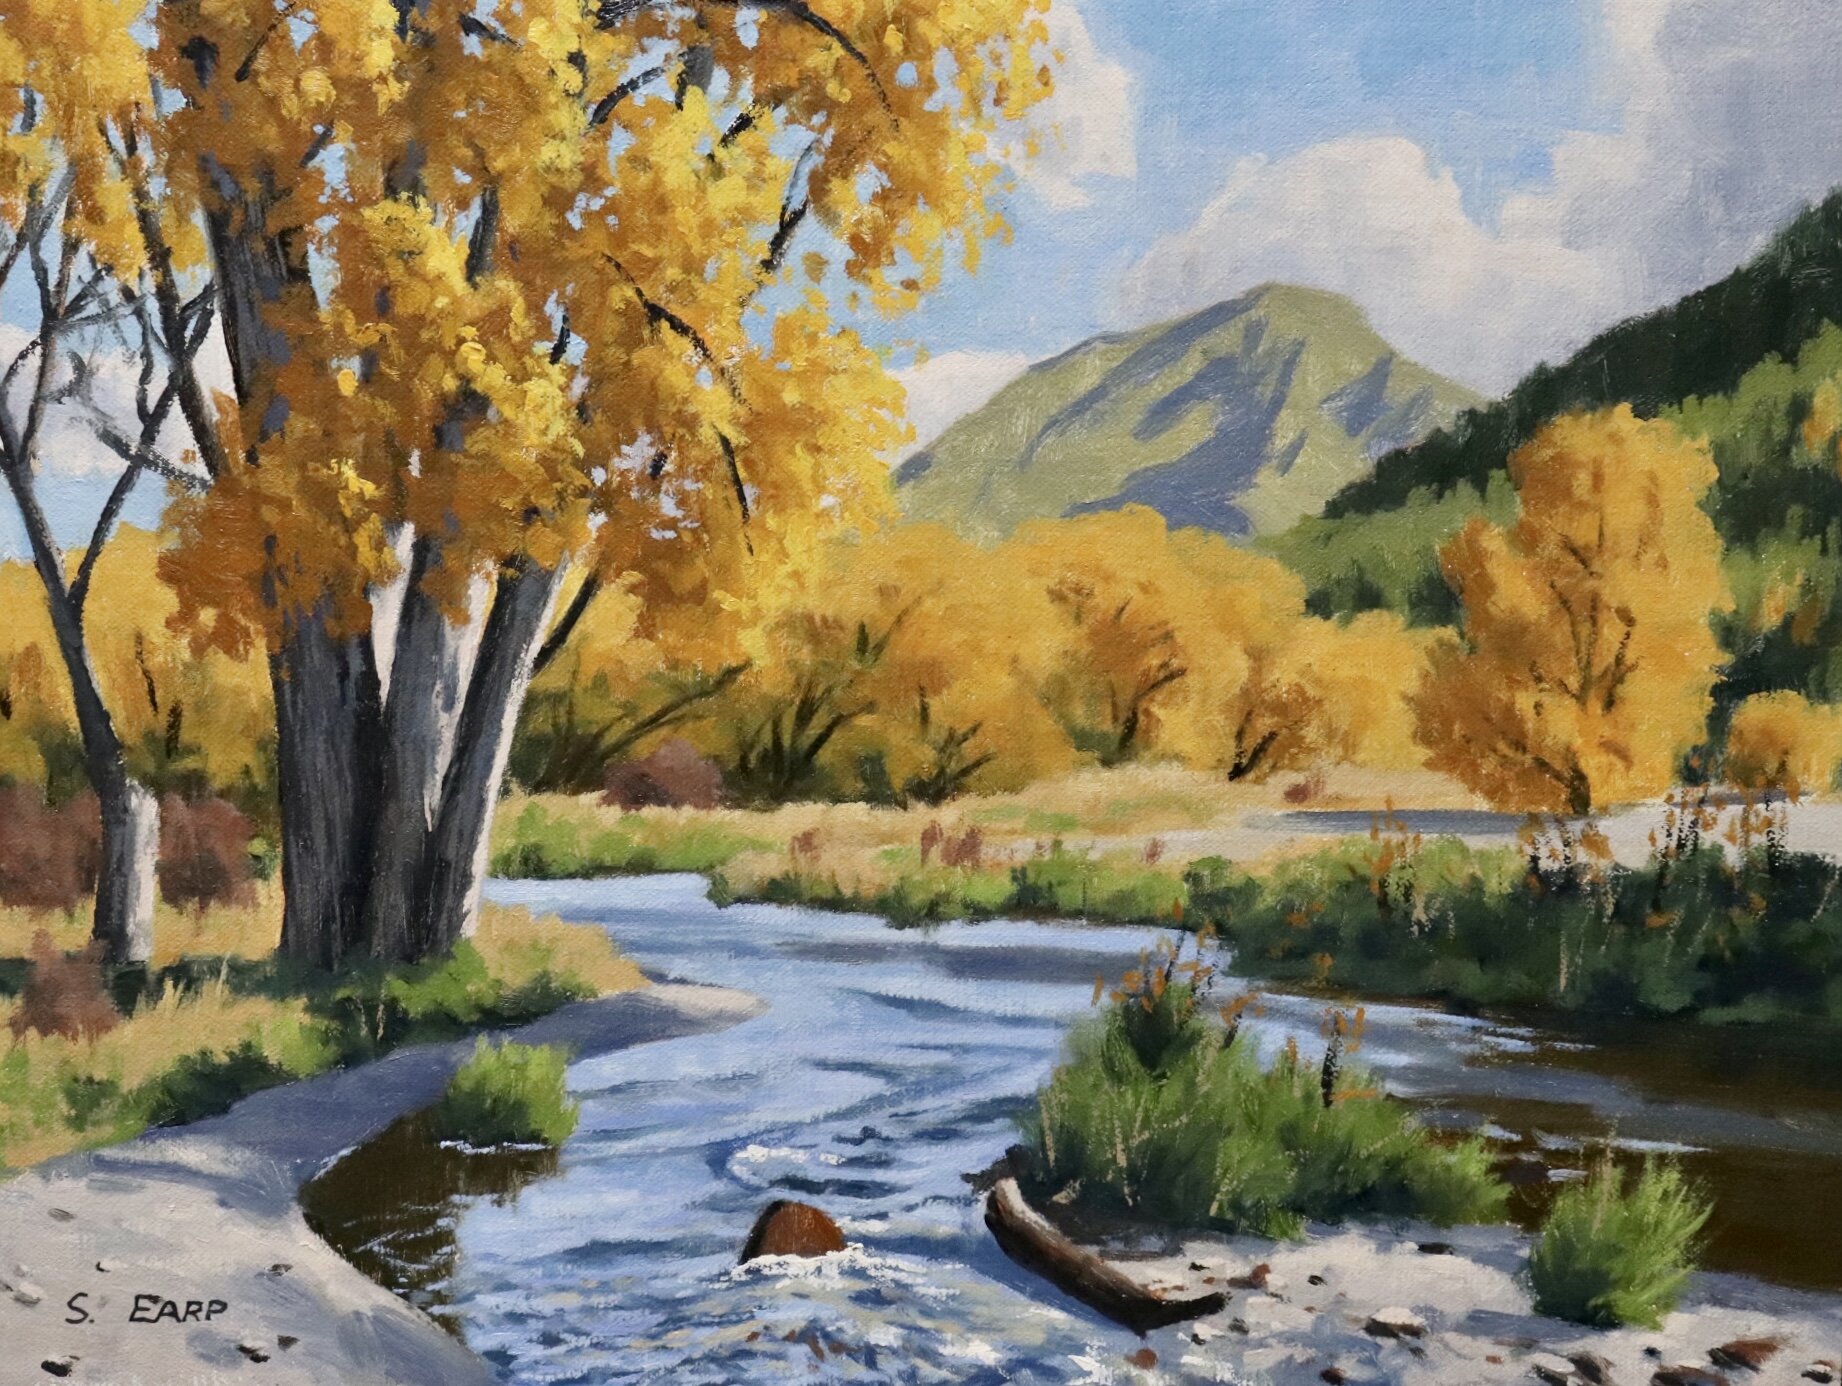 Autumn Poplars and Willows - Arrowtown - Samuel Earp - Oil Painting.jpg